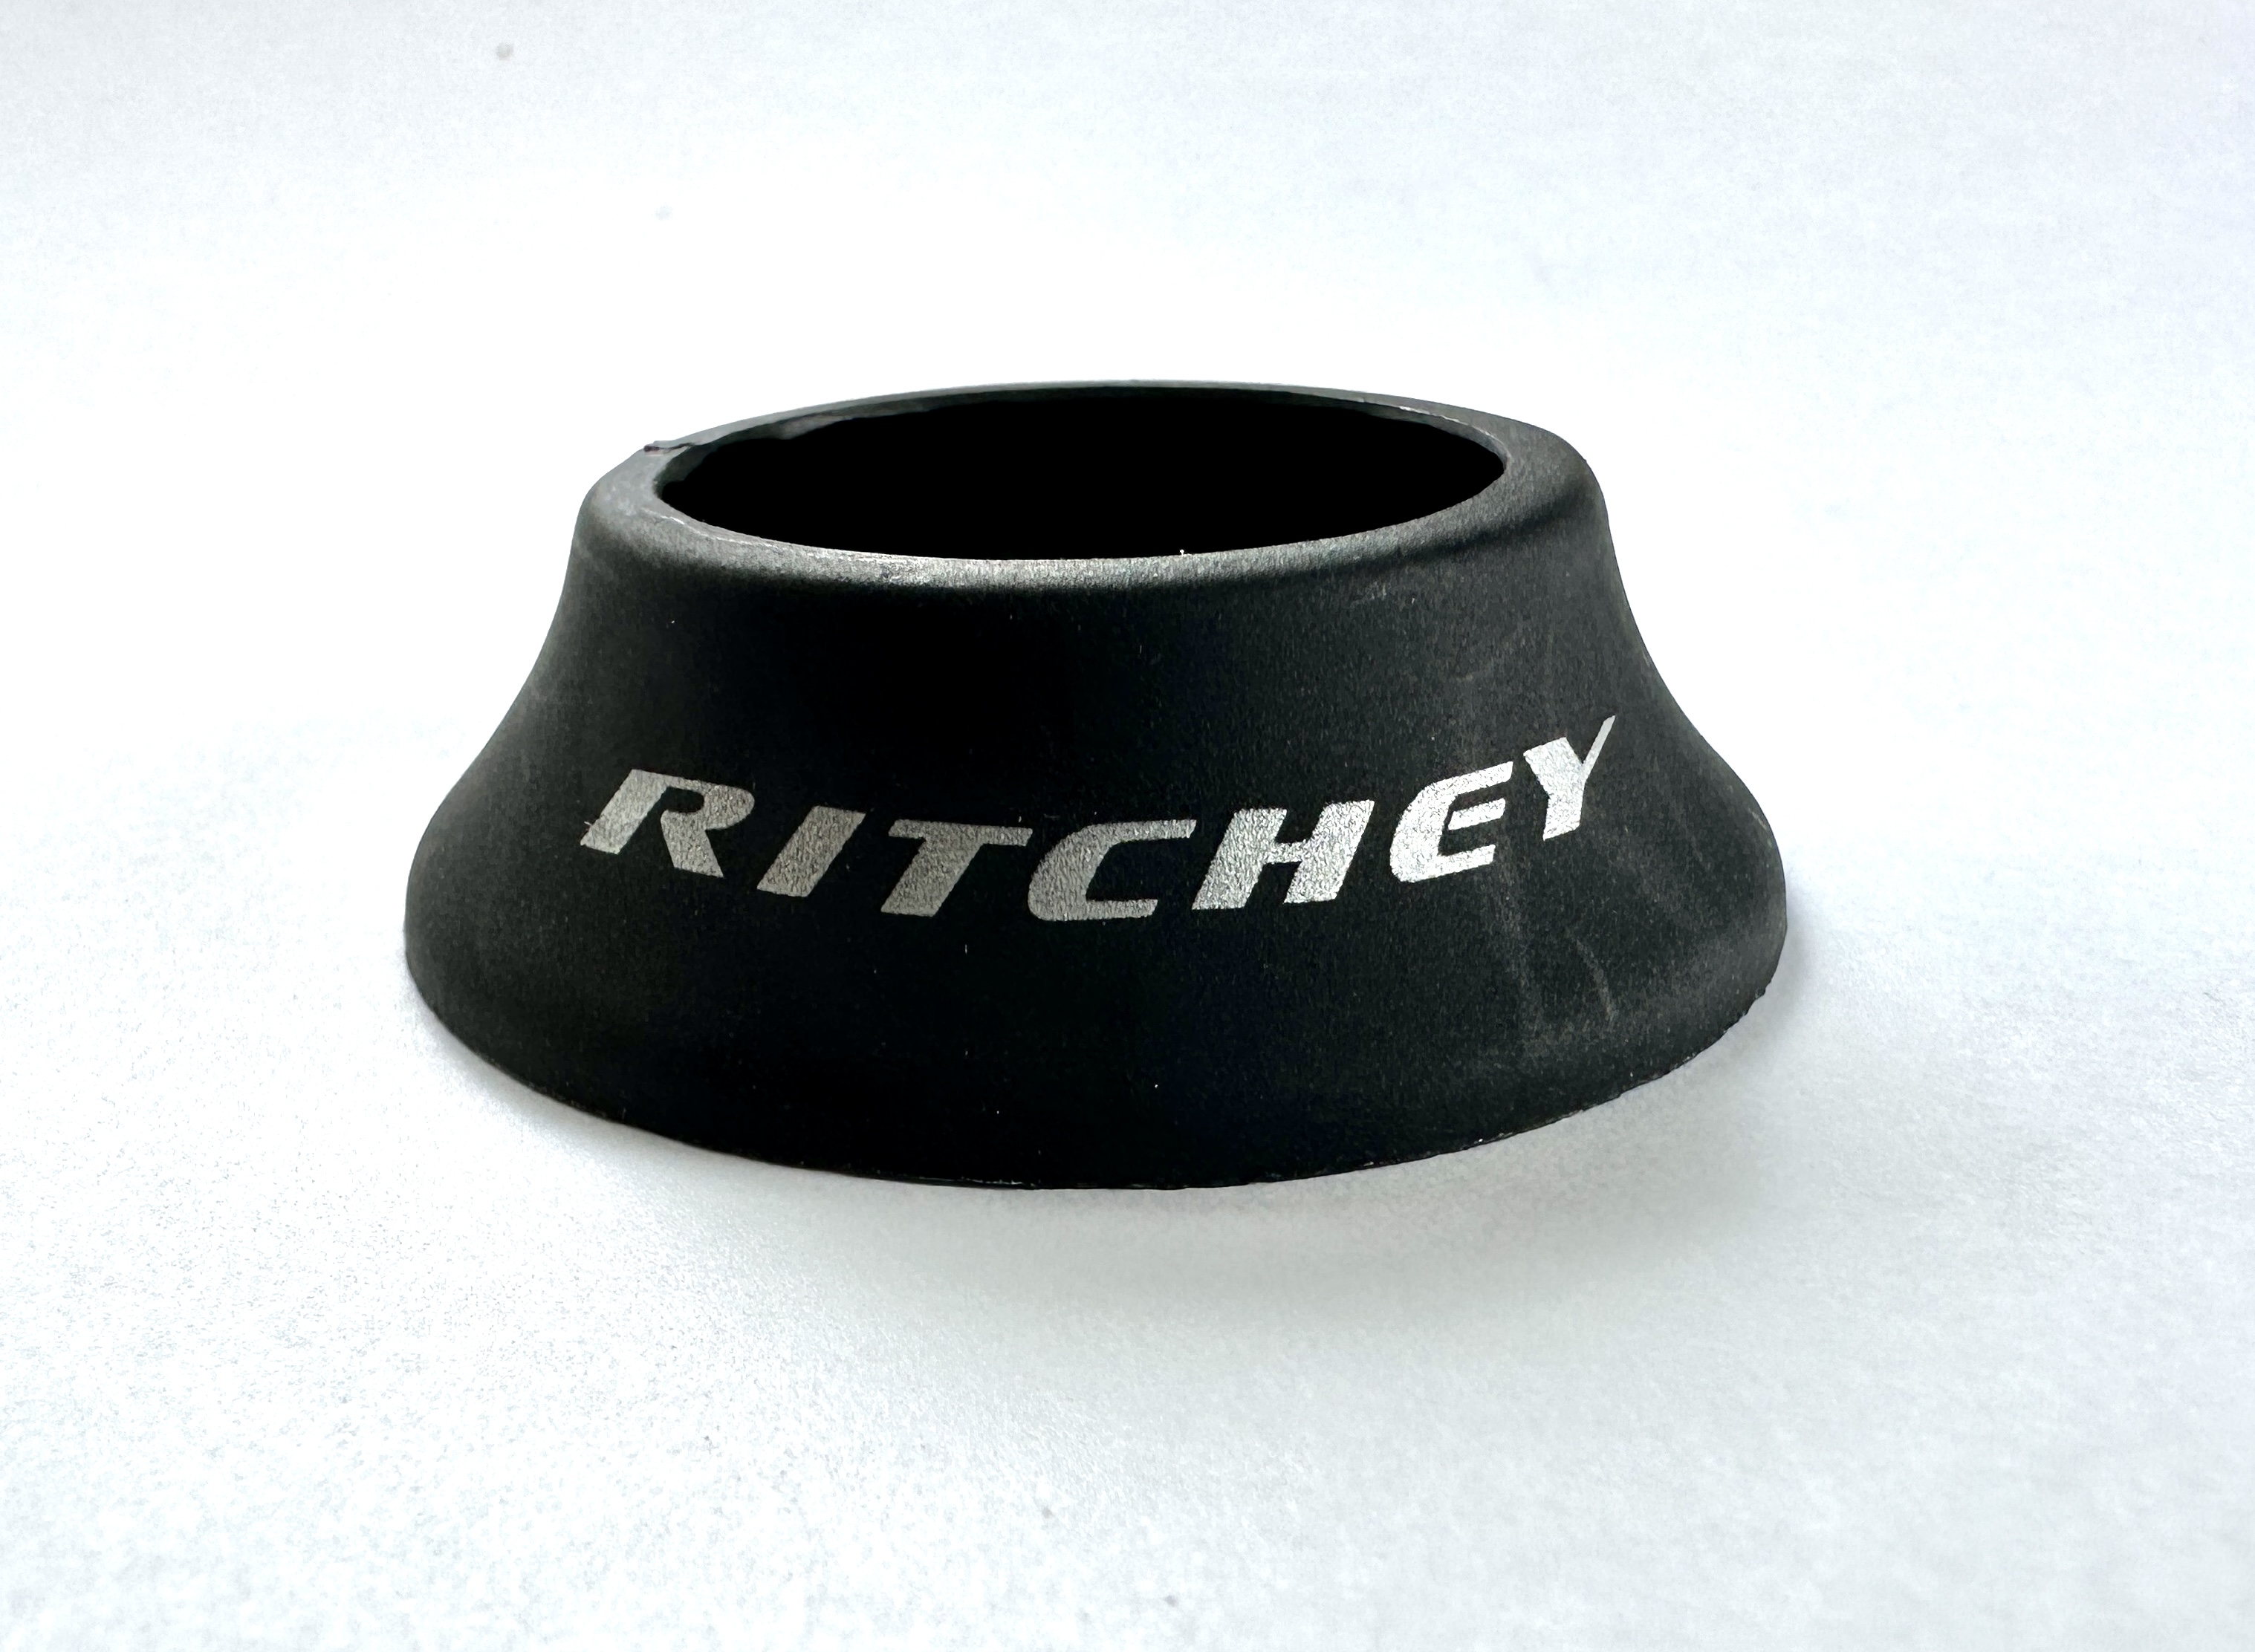 Entretoise conique de Ritchey pour jeu de direction semi-intégré.